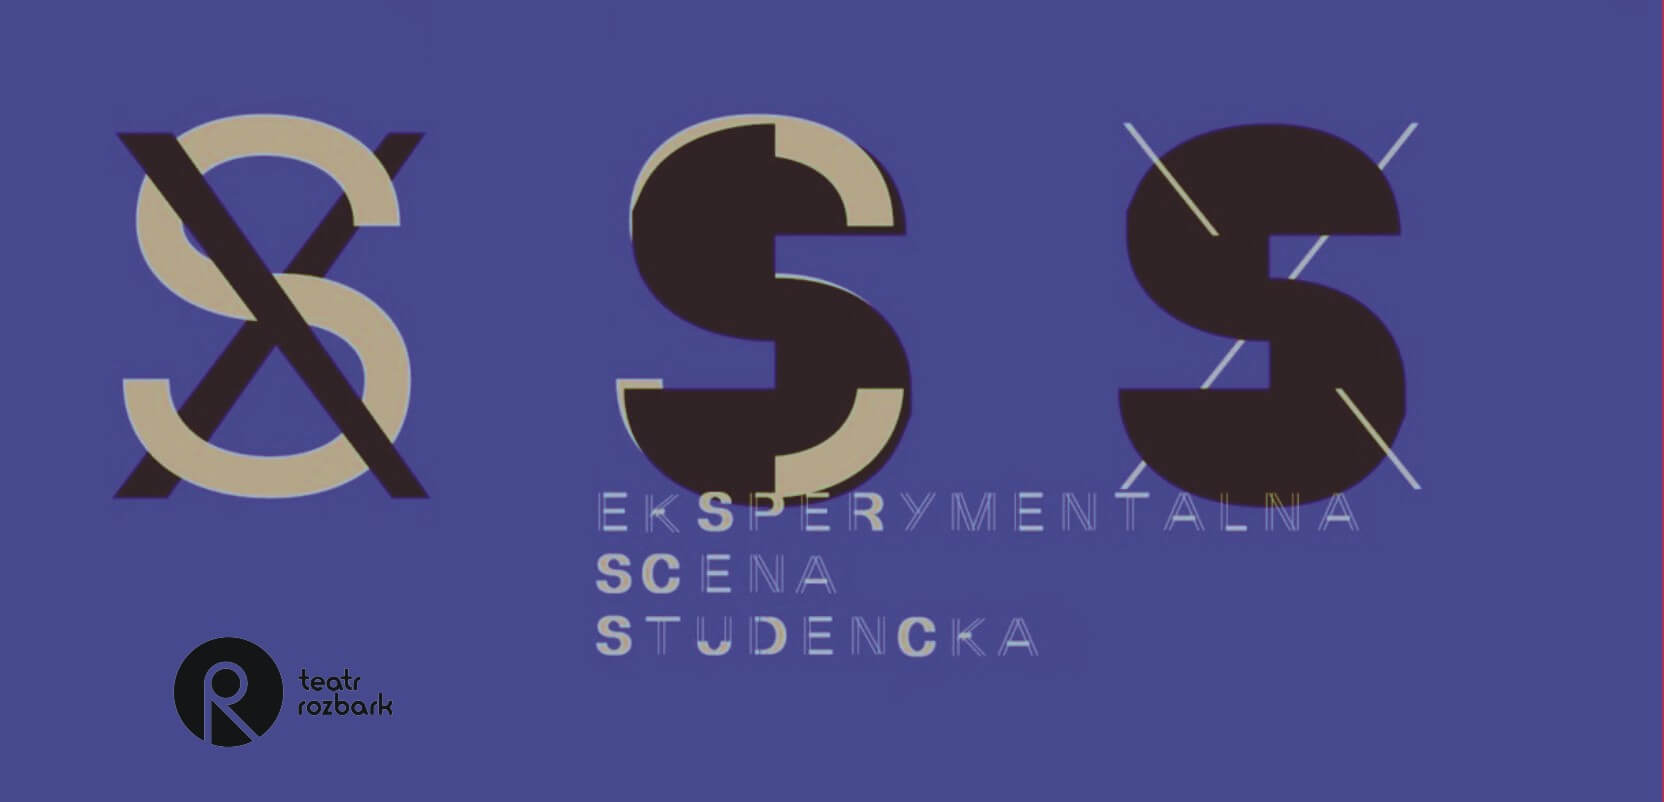 XSS Eksperymentalna Scena Studencka- plakat poziomy w kolorze fioletu. Przez środek plakatu zamieszczono kolejno: dużą beżową literę S przekreśloną bordowym X, następnie bordową litera S, na której górze i dole umieszczono beżowy kolor, następnie duża litera S w kolorze bordowym, przekreślona beżowym X. Poniżej jest przenikający beżowy napis EKSPERYMENTALNA SCENA STUDENCKA. W lewym dolnym rogu umieszczono czarny logotyp Teatru ROZBARK.